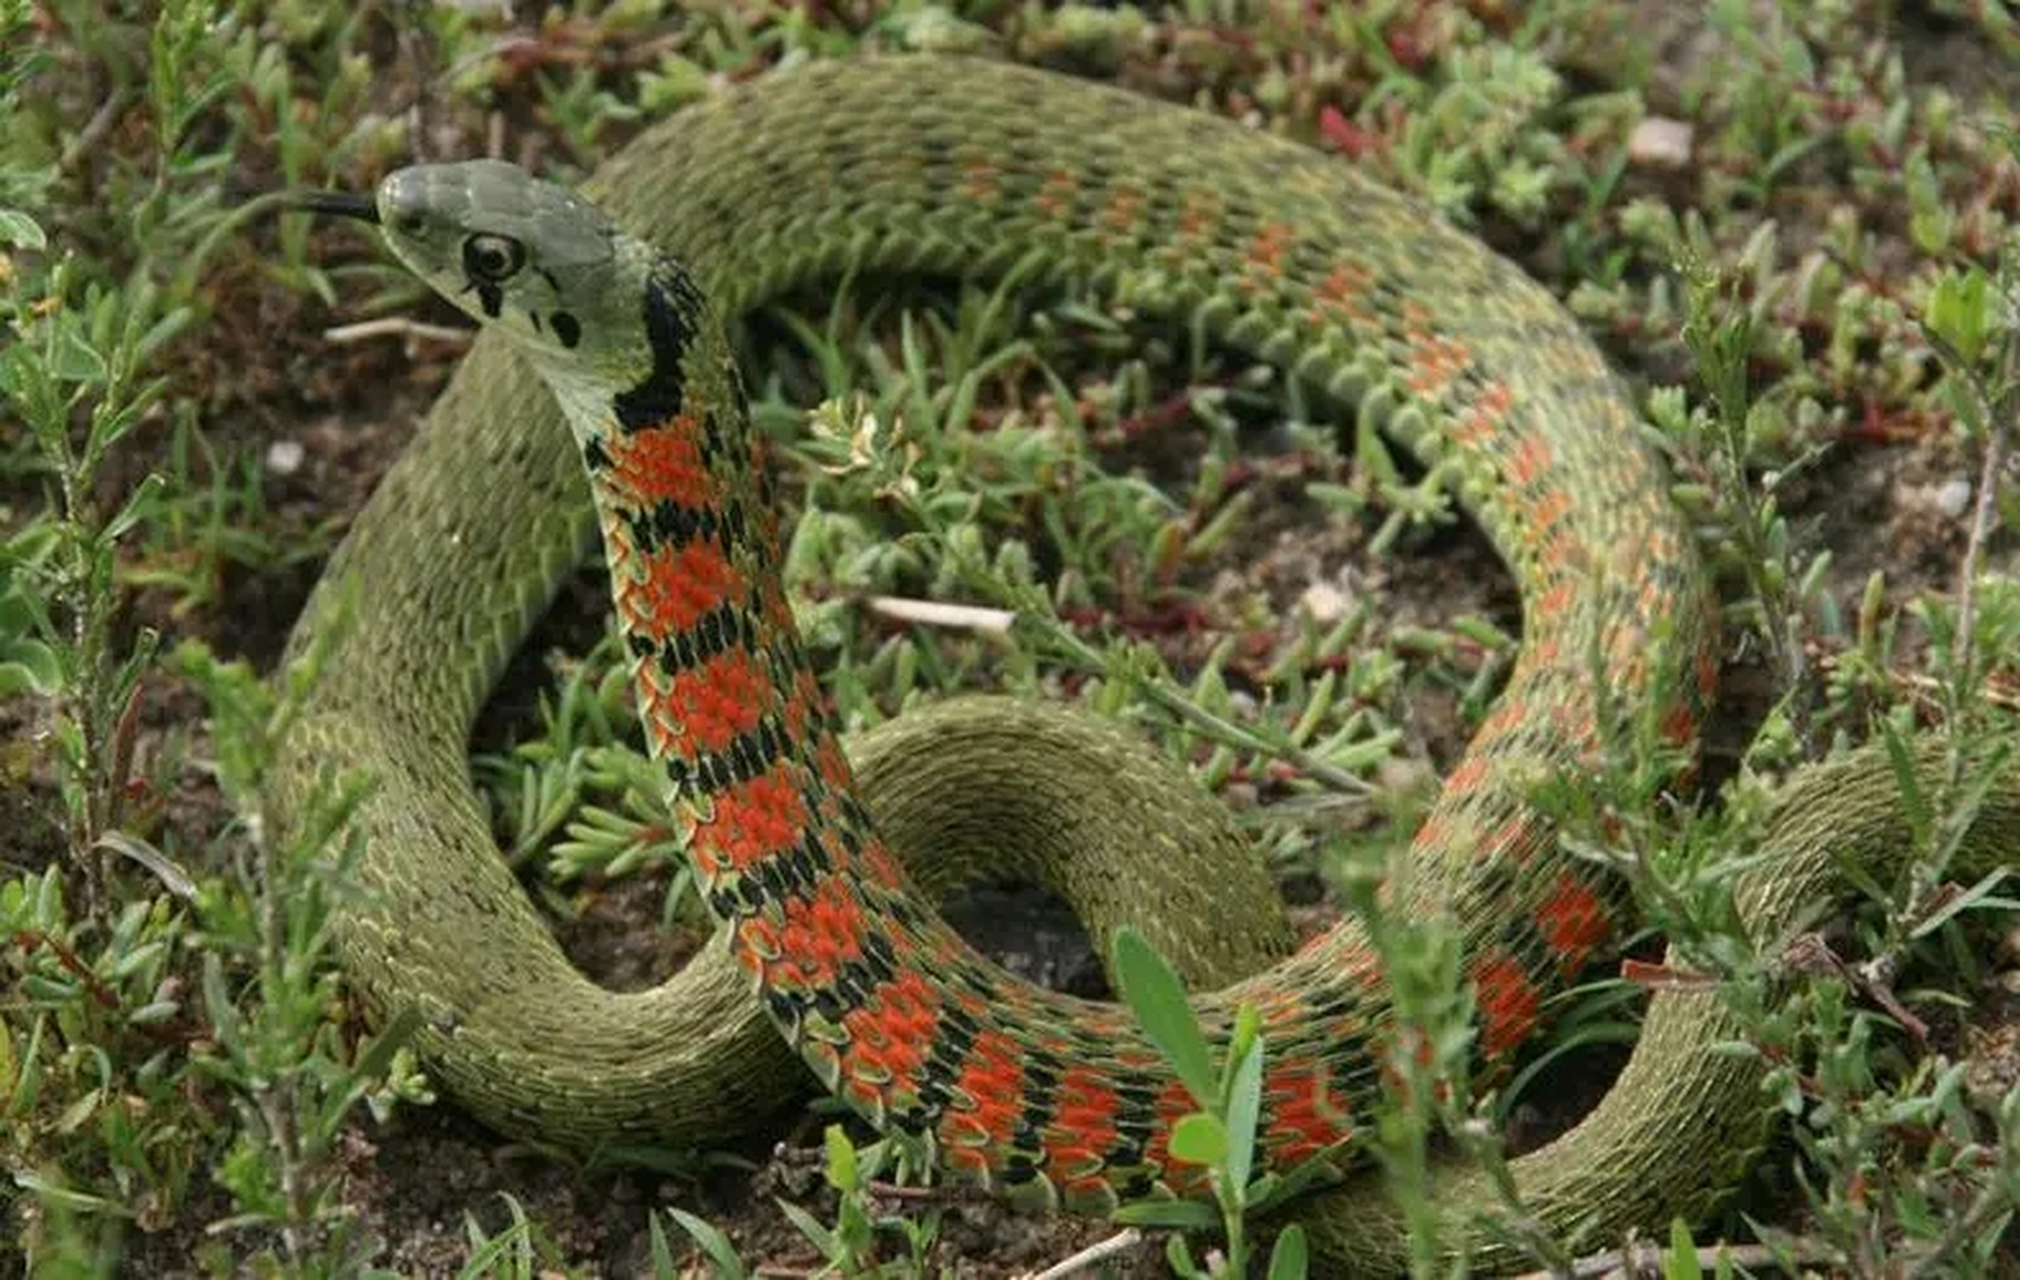 湖北十大毒蛇排行榜图片